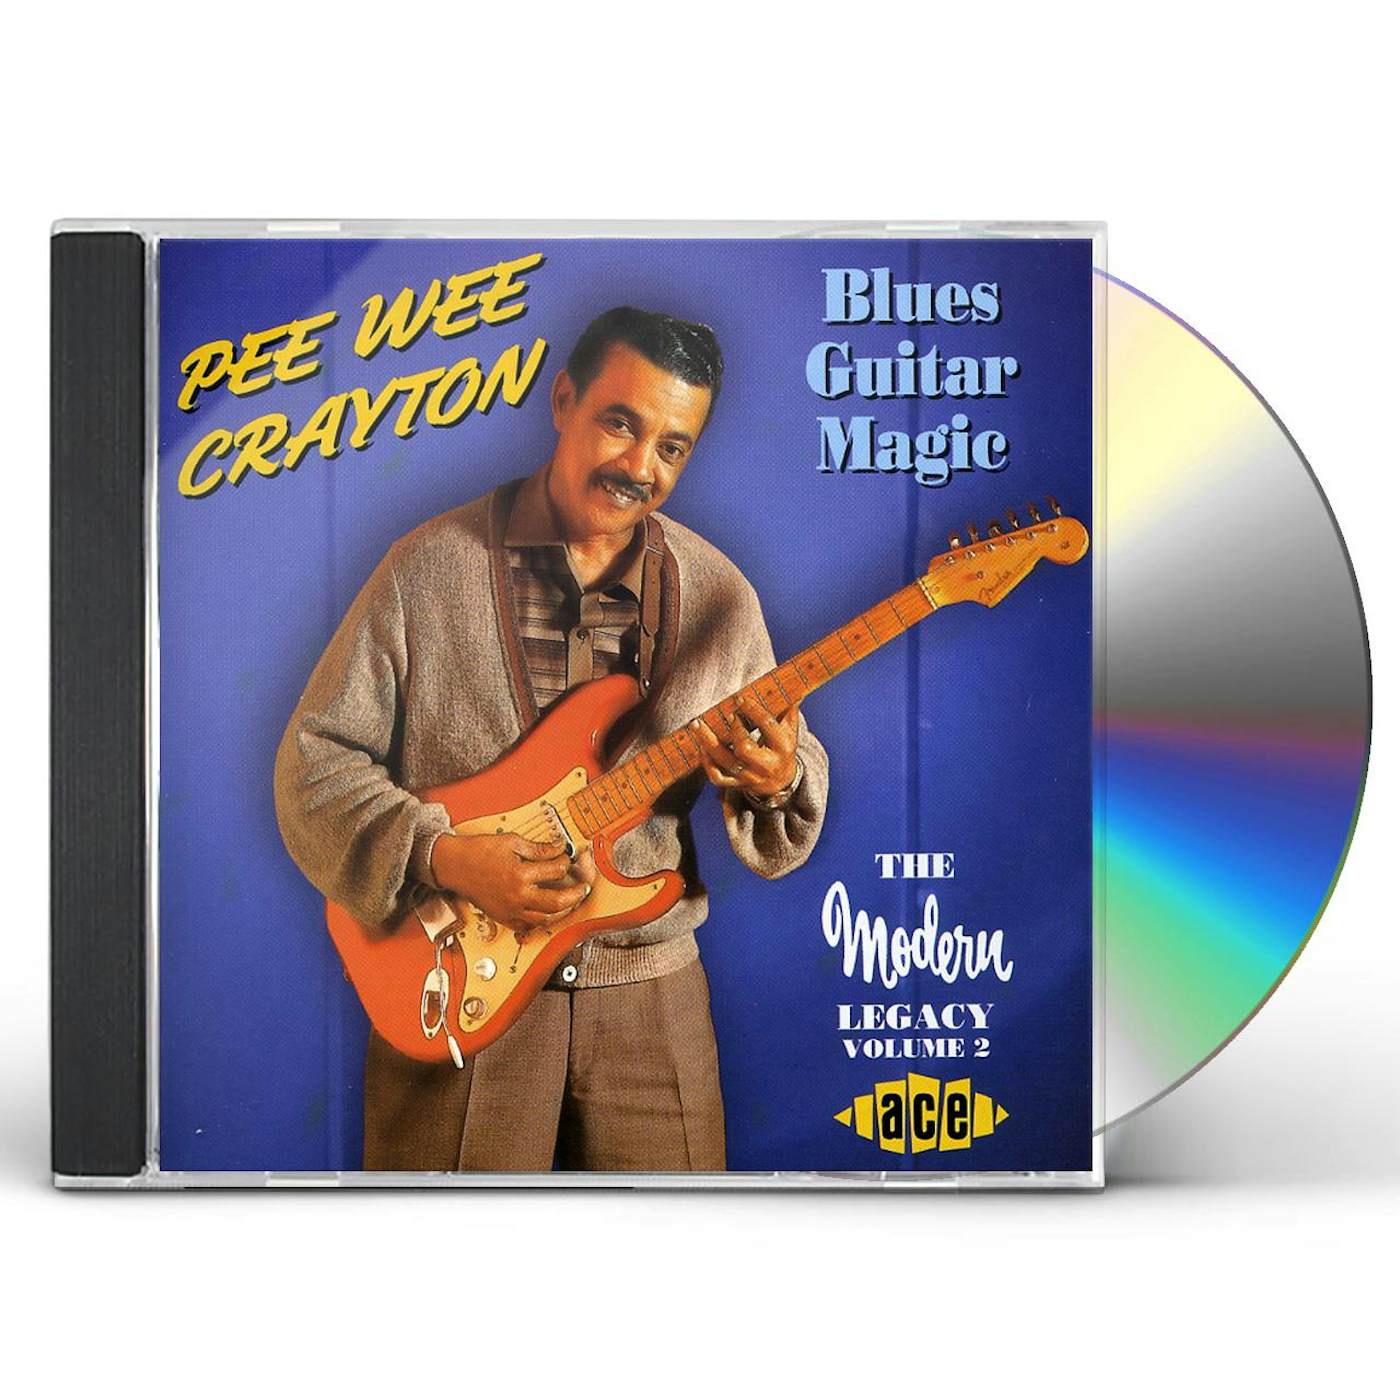 Pee Wee Crayton BLUES GUITAR MAGIC CD